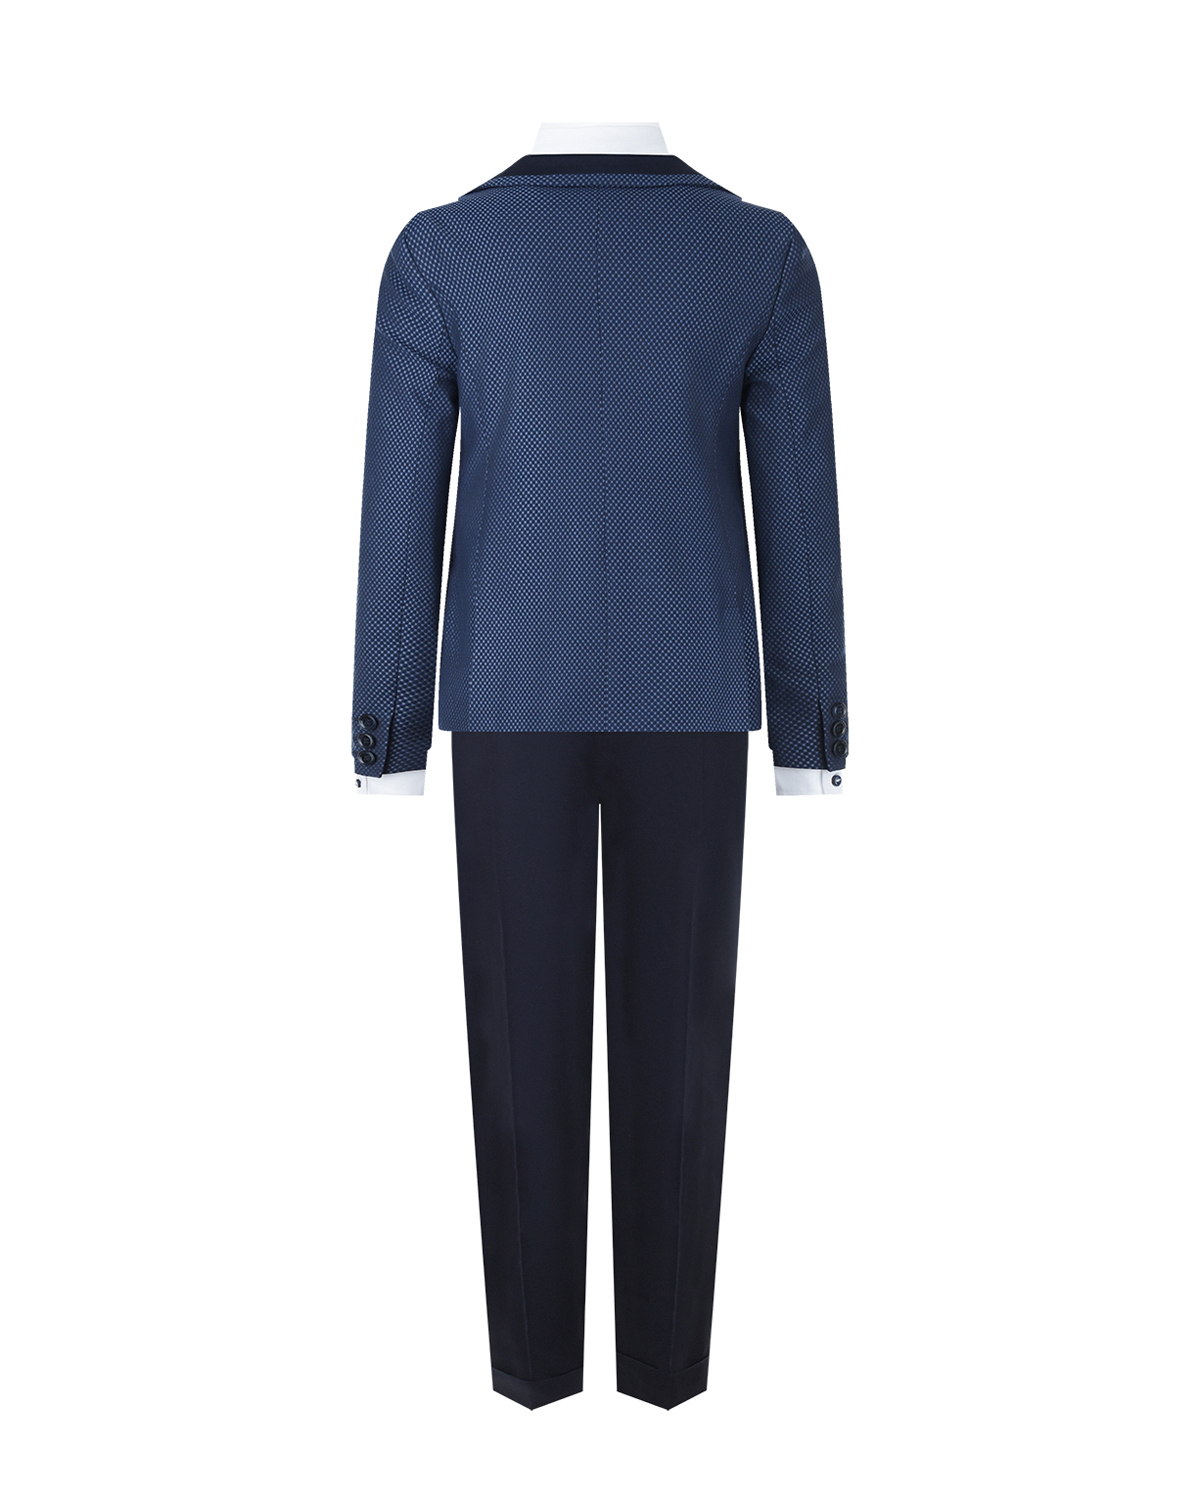 Комплект: пиджак, жилет, рубашка с бабочкой и брюки Clix детский, размер 116, цвет мультиколор - фото 2